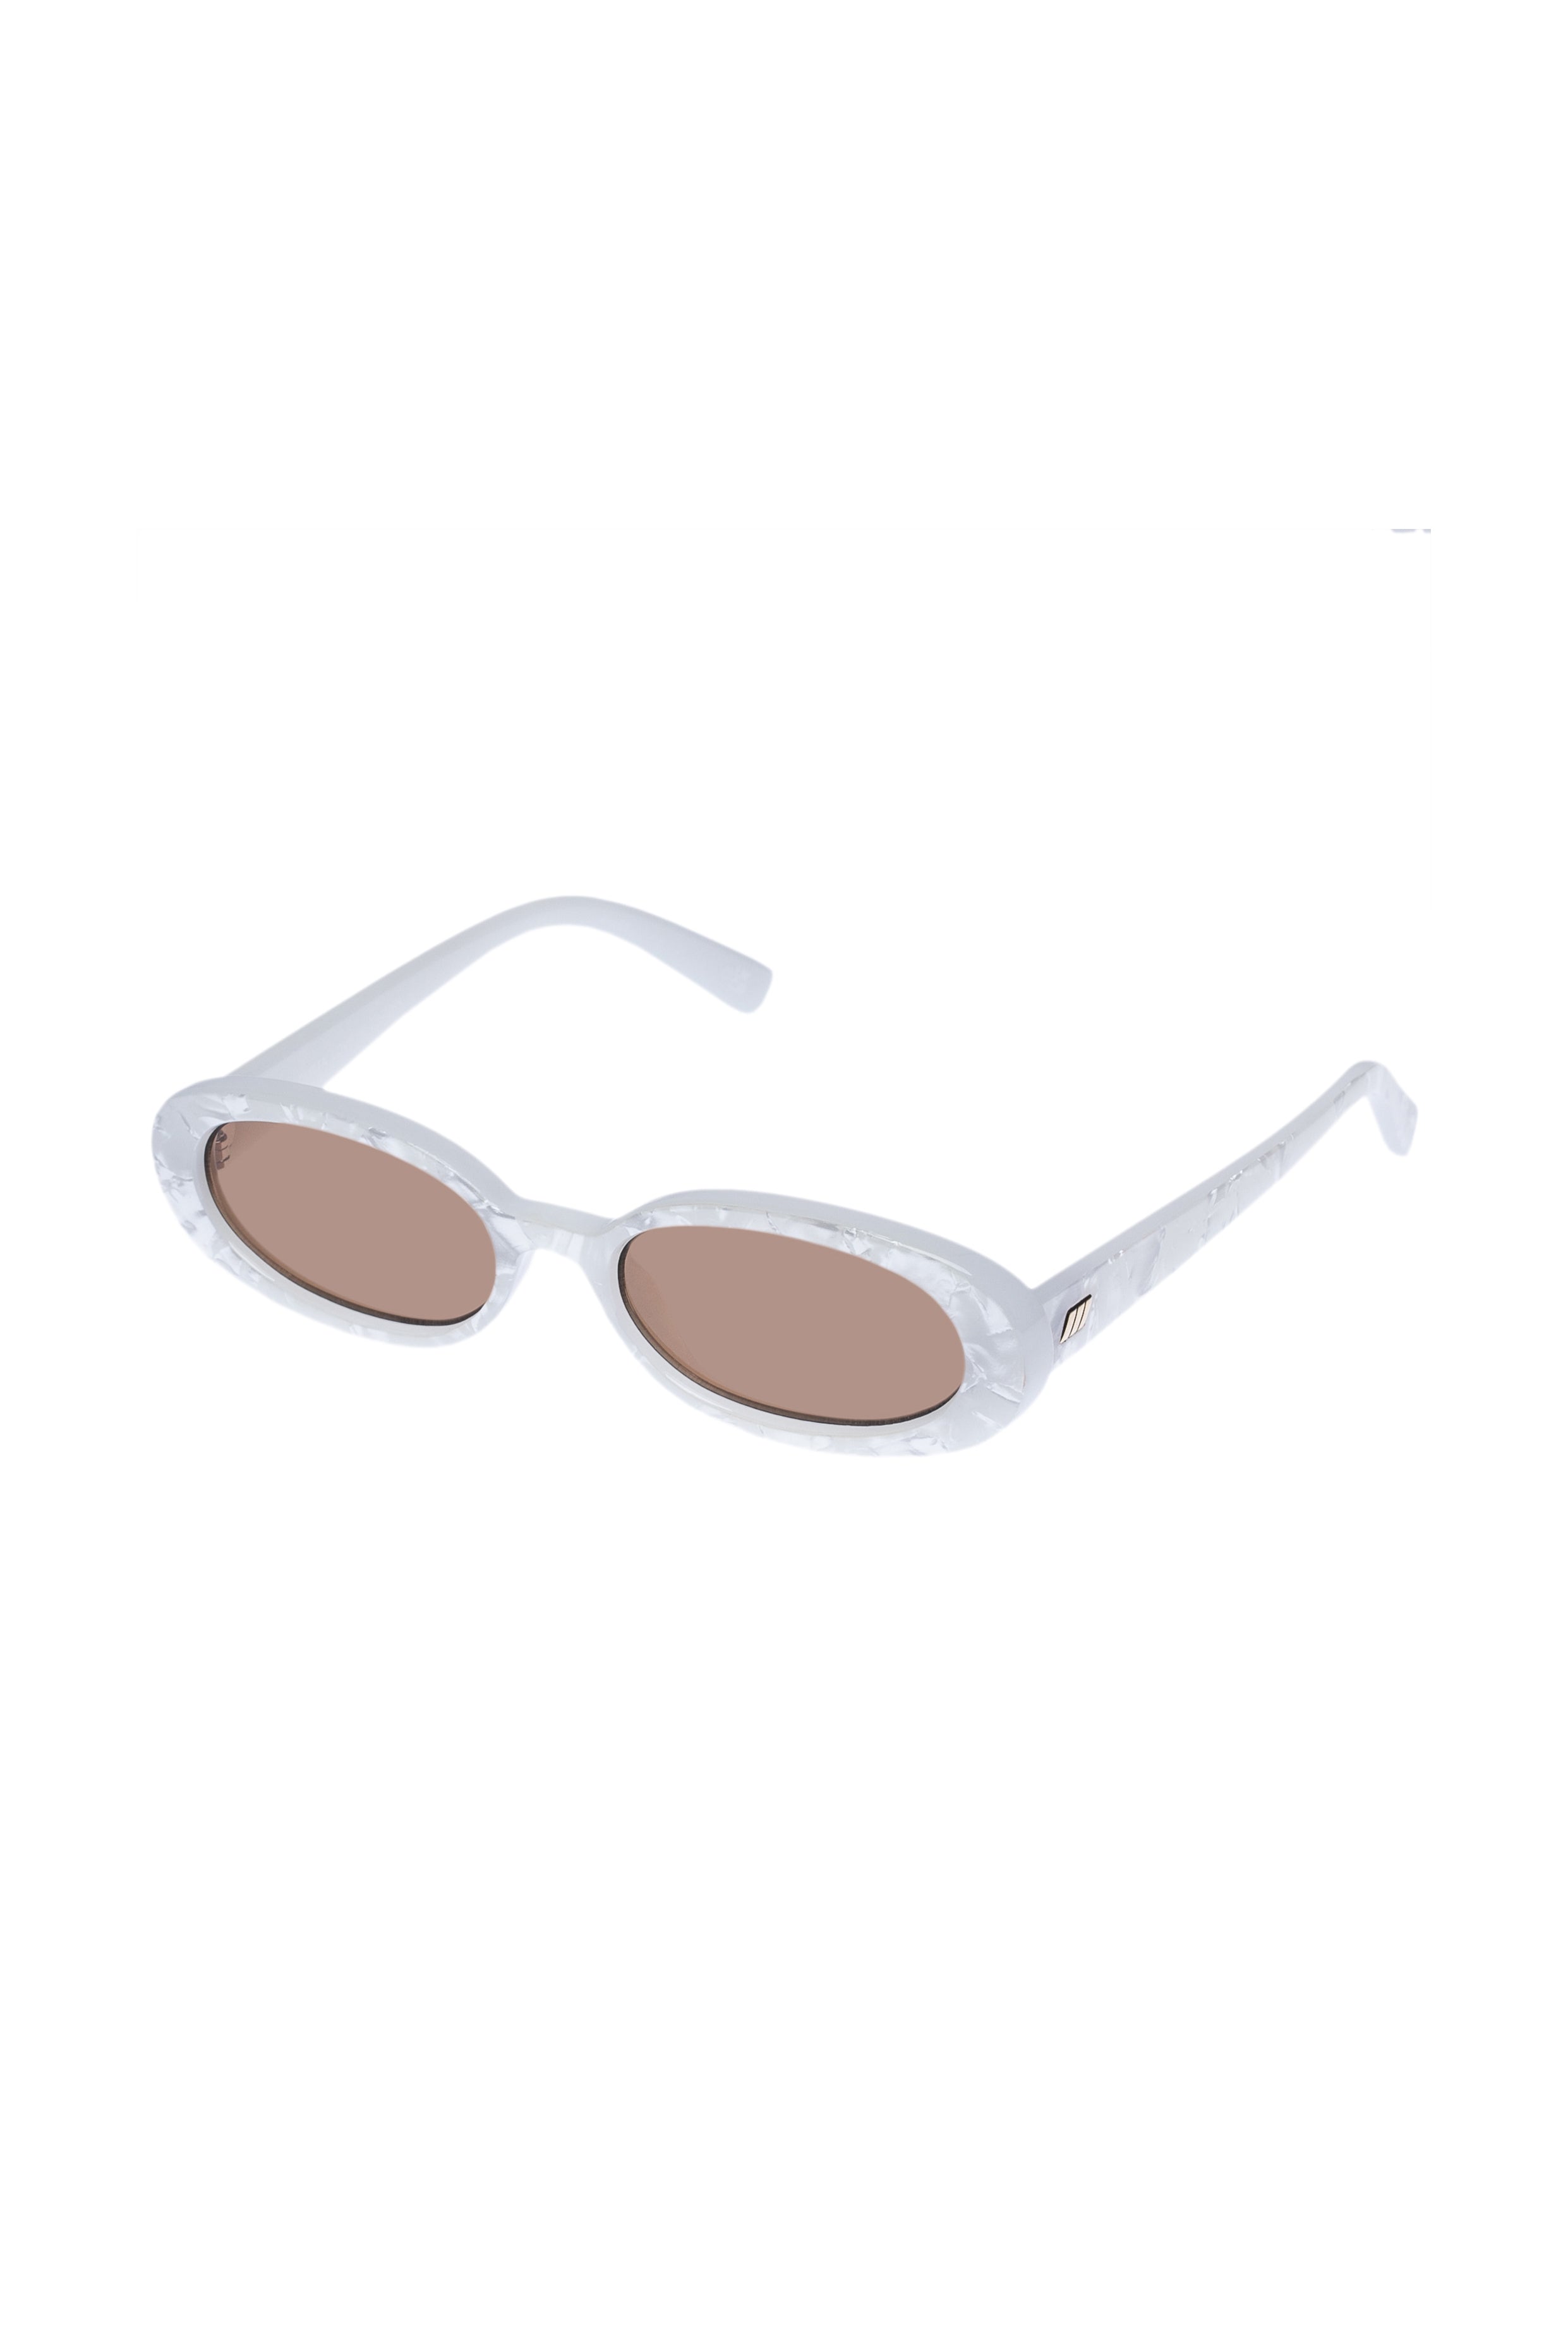 Outta Love Sunglasses - White Marble